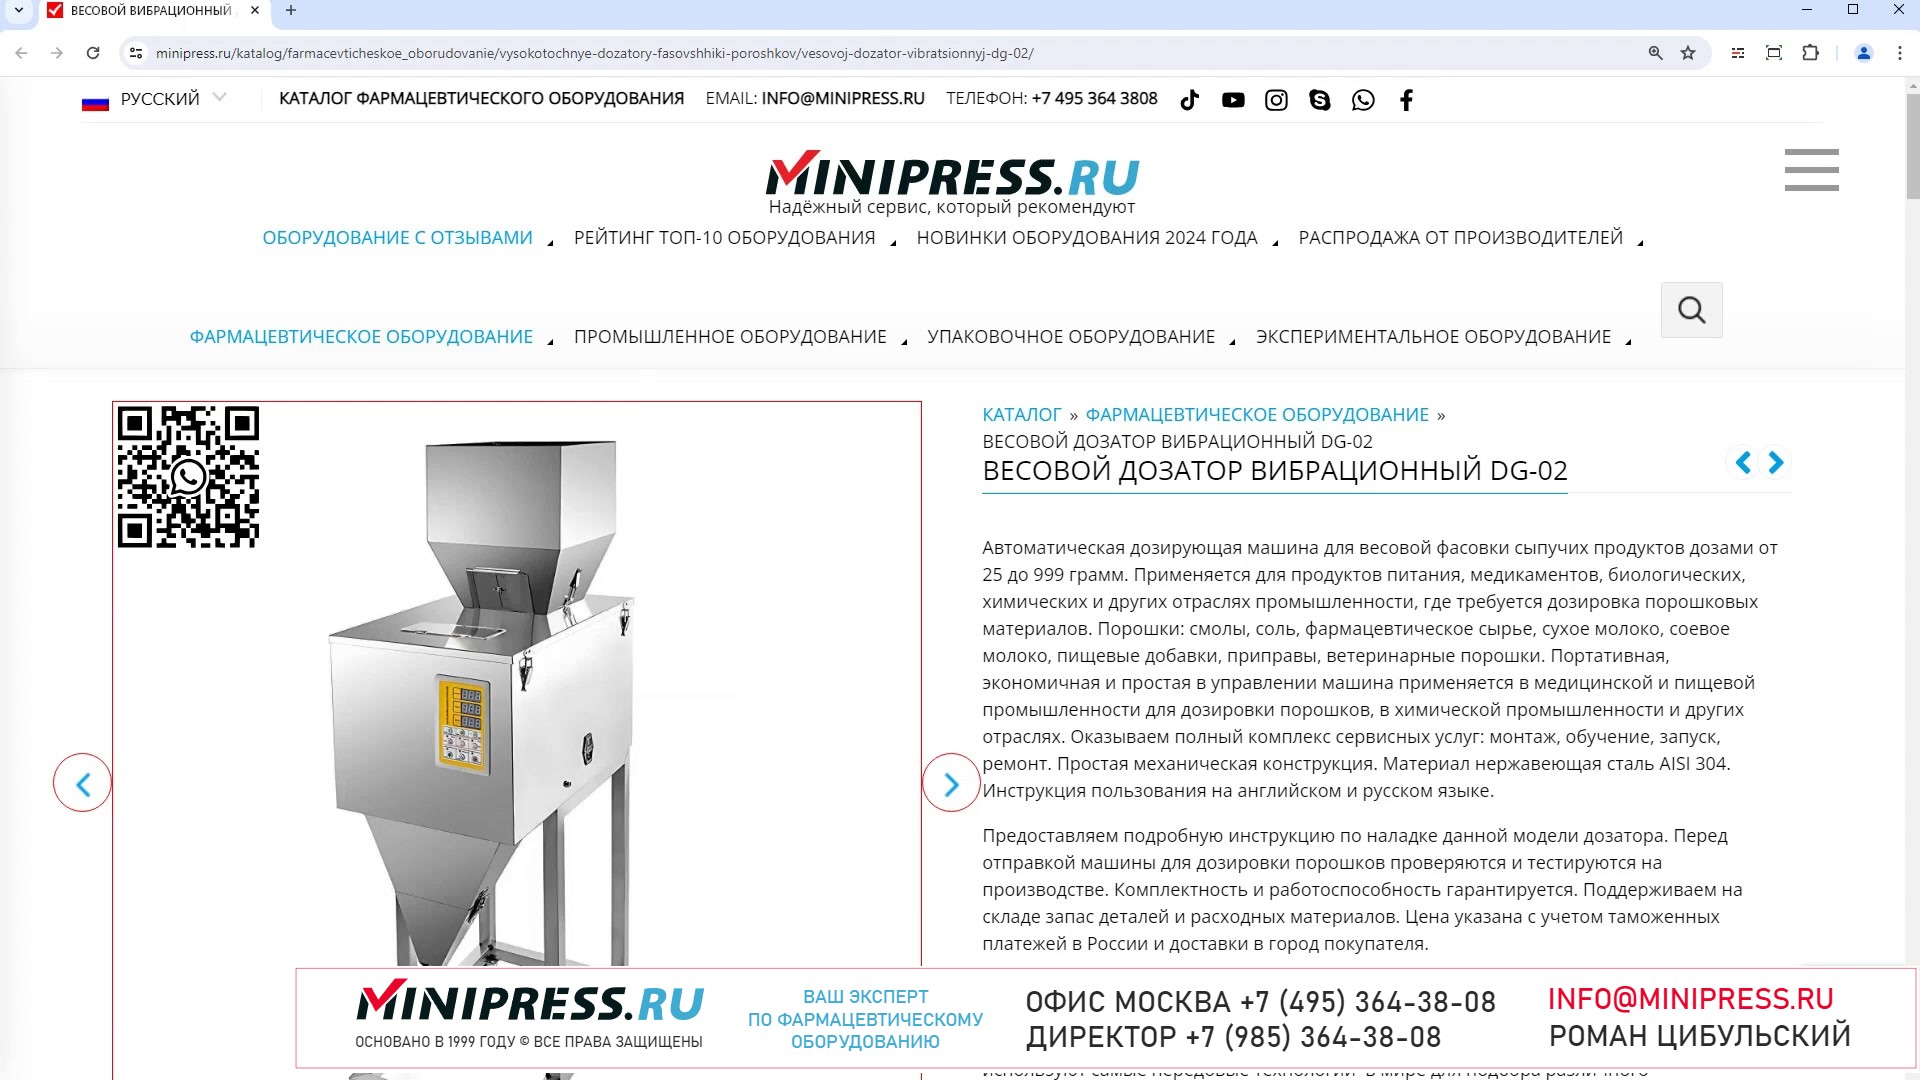 Minipress.ru Весовой дозатор вибрационный DG-02